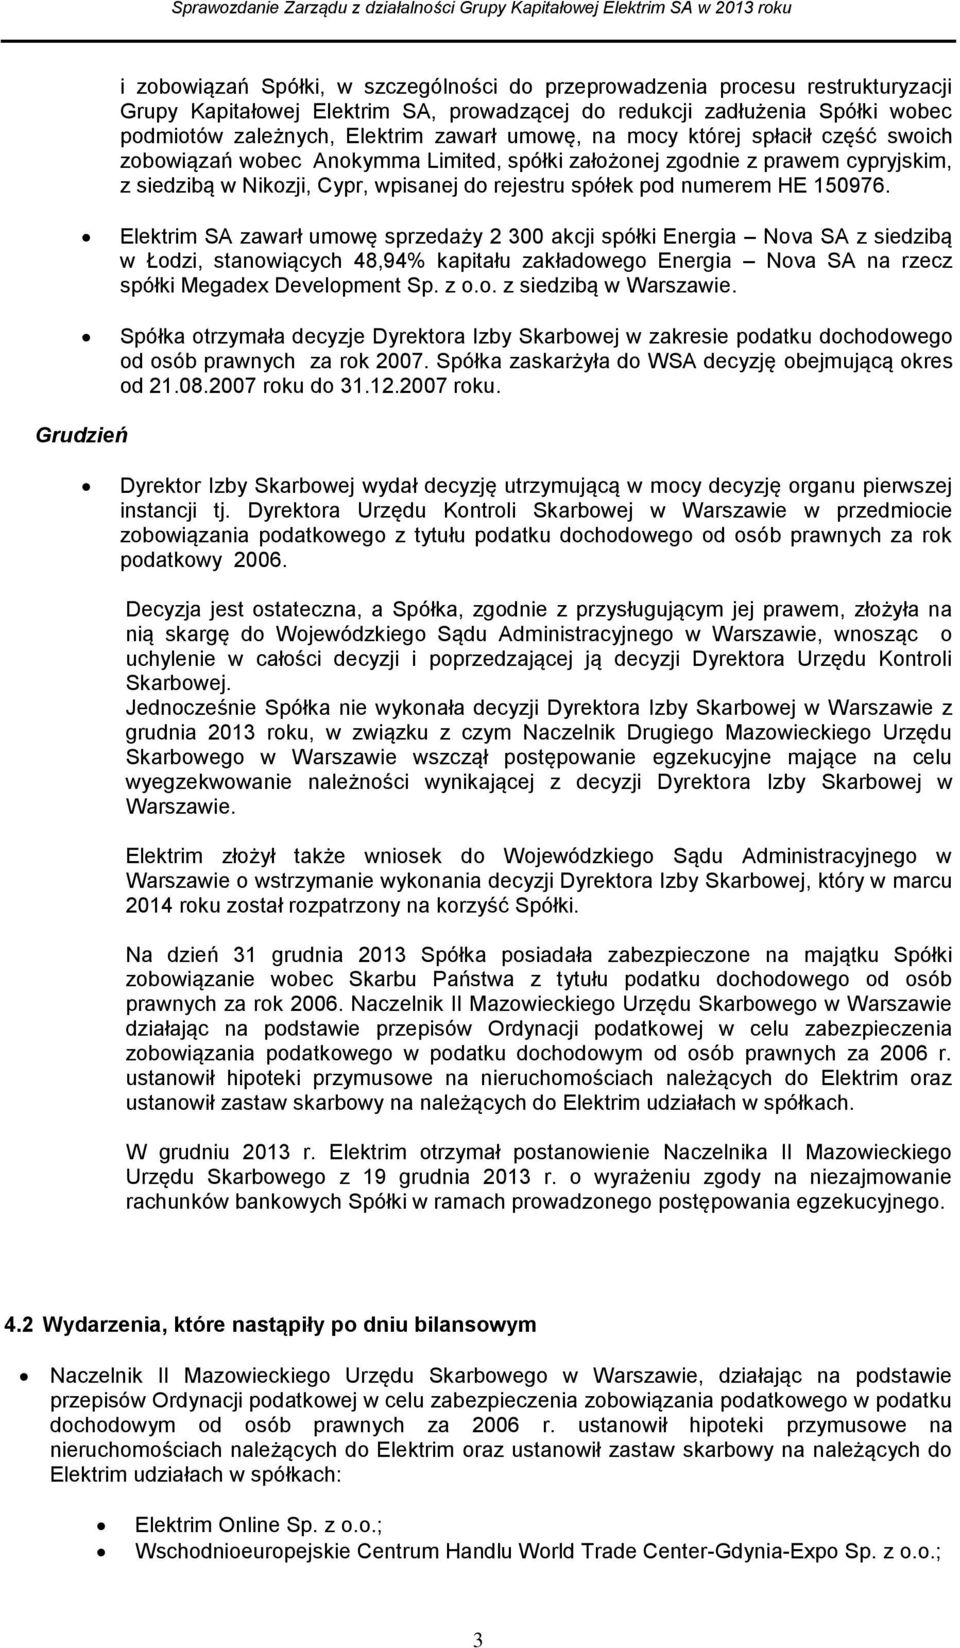 150976. Elektrim SA zawarł umowę sprzedaży 2 300 akcji spółki Energia Nova SA z siedzibą w Łodzi, stanowiących 48,94% kapitału zakładowego Energia Nova SA na rzecz spółki Megadex Development Sp. z o.